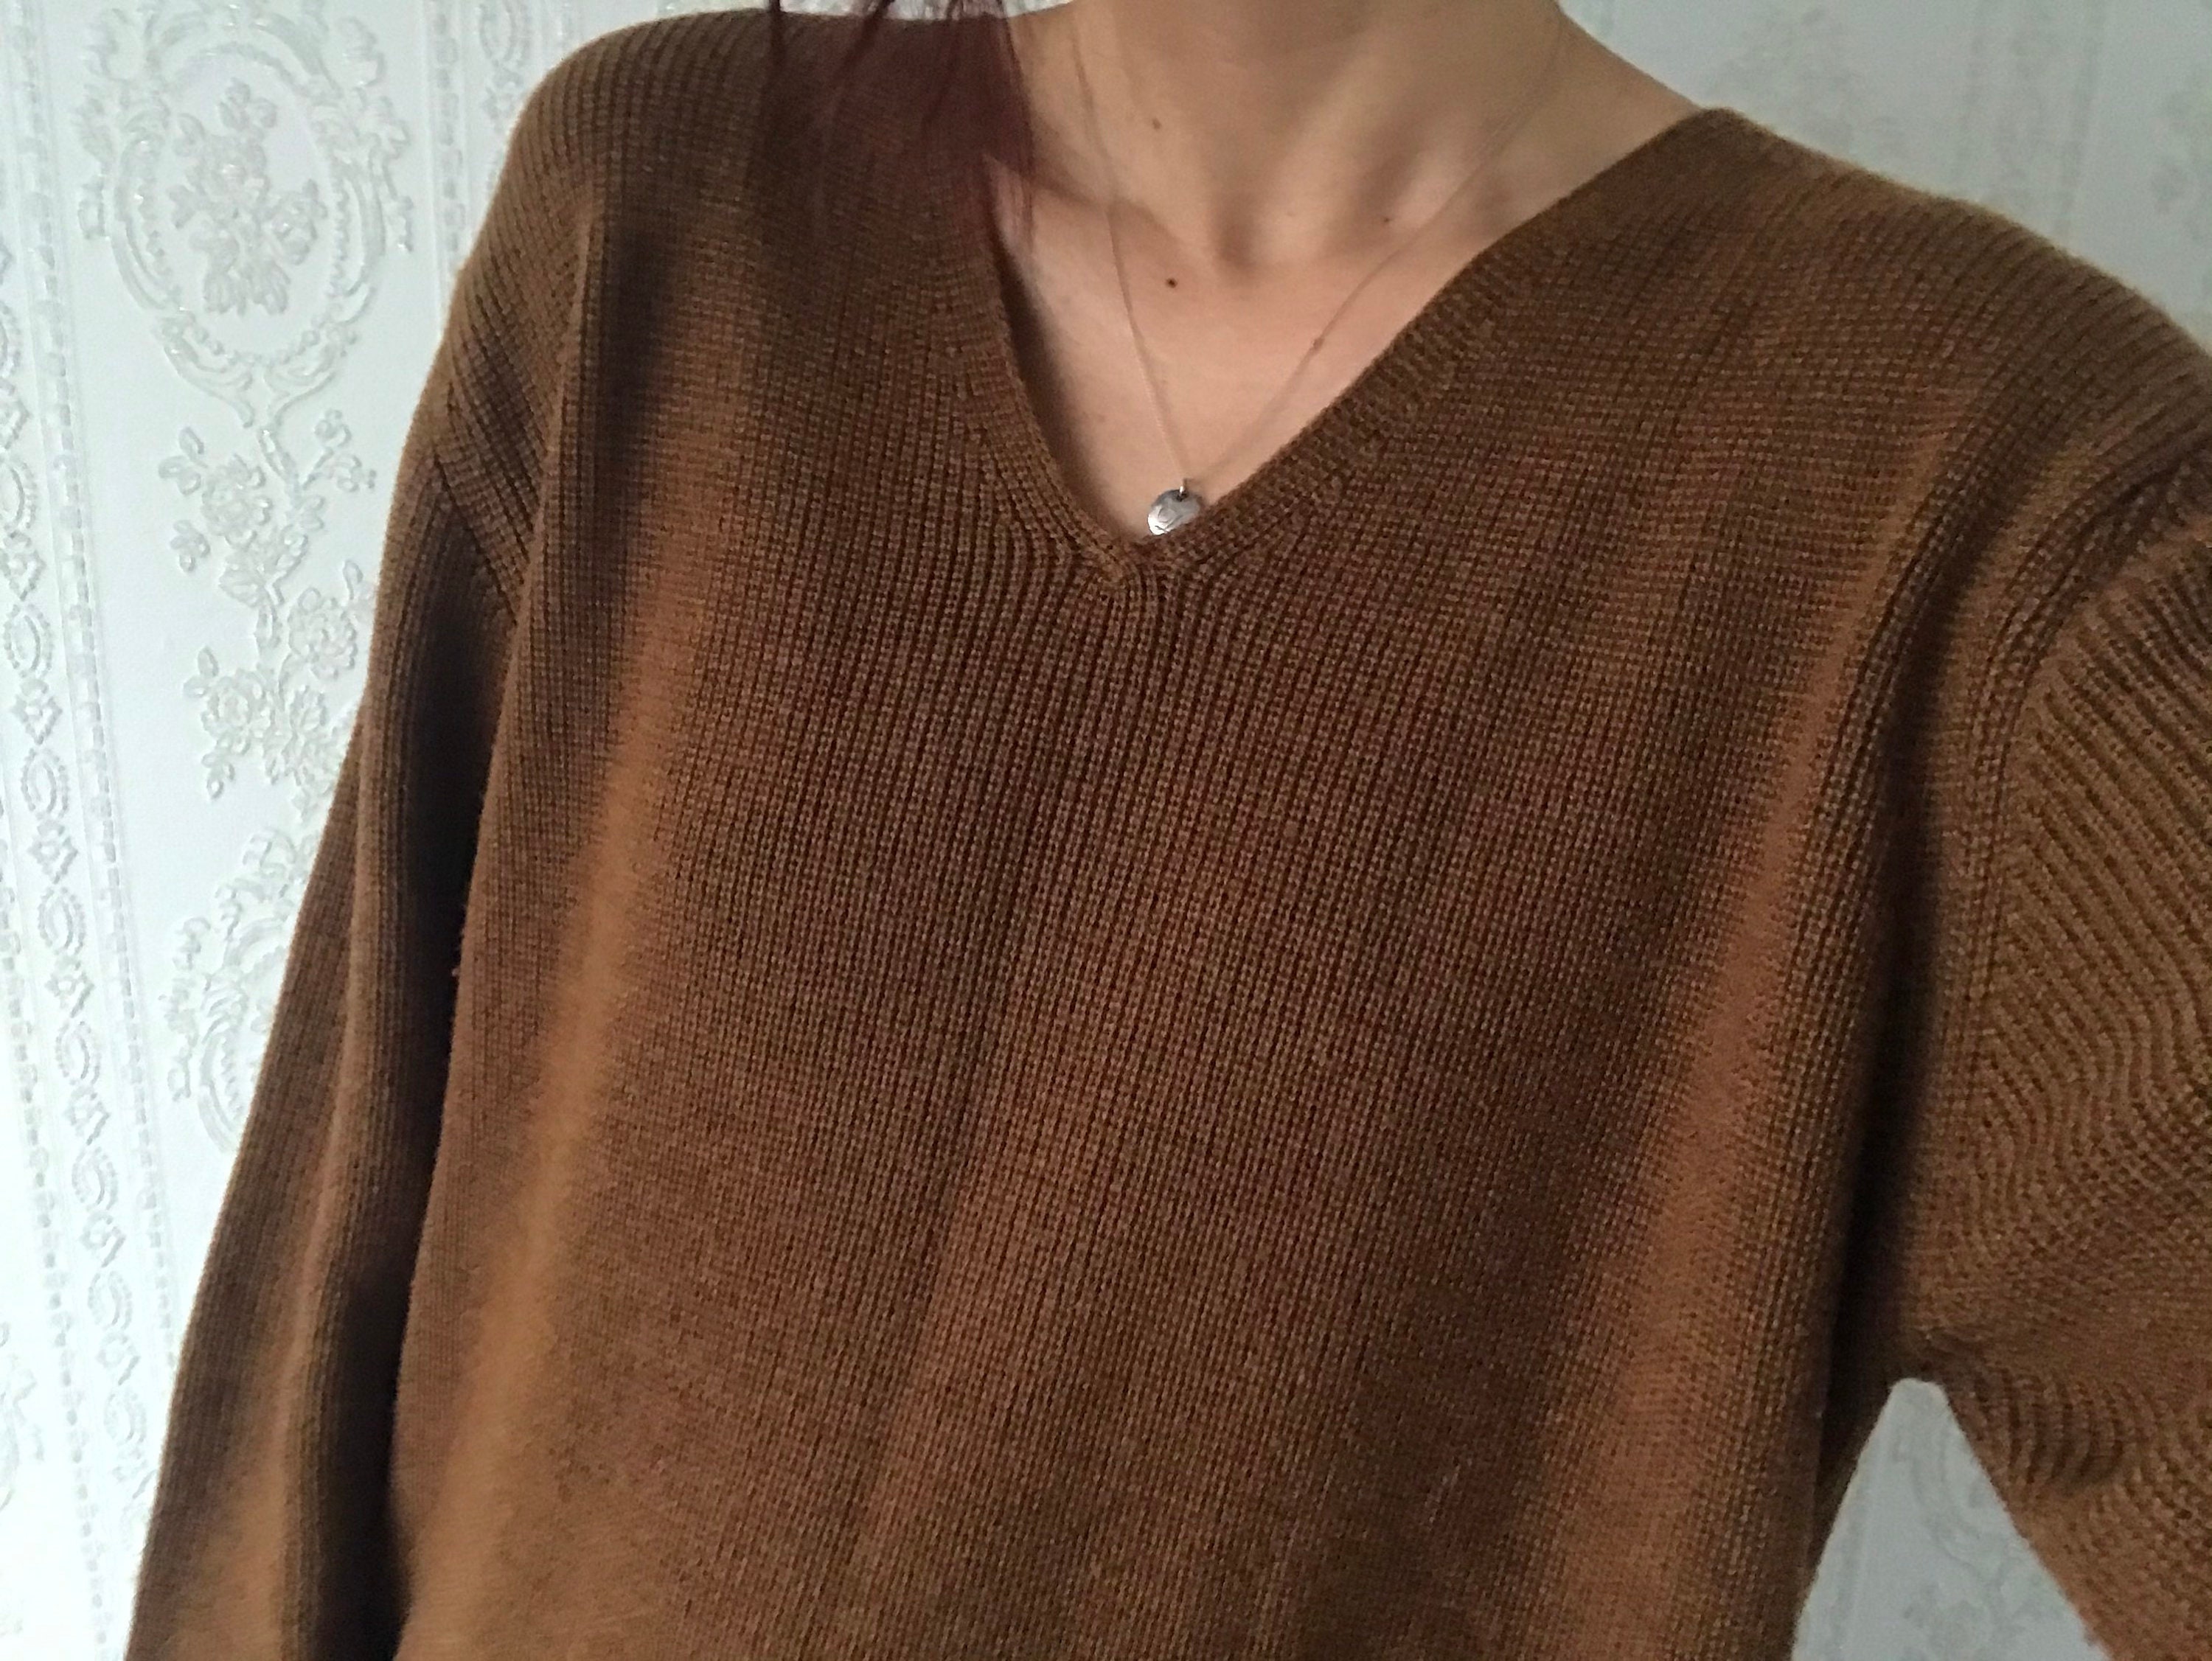 Vintage Chestnut Brown V Wool Blend Mirco Knit Blouse/ Top/ Pullover/ Sweater/ Jumper/ S - L